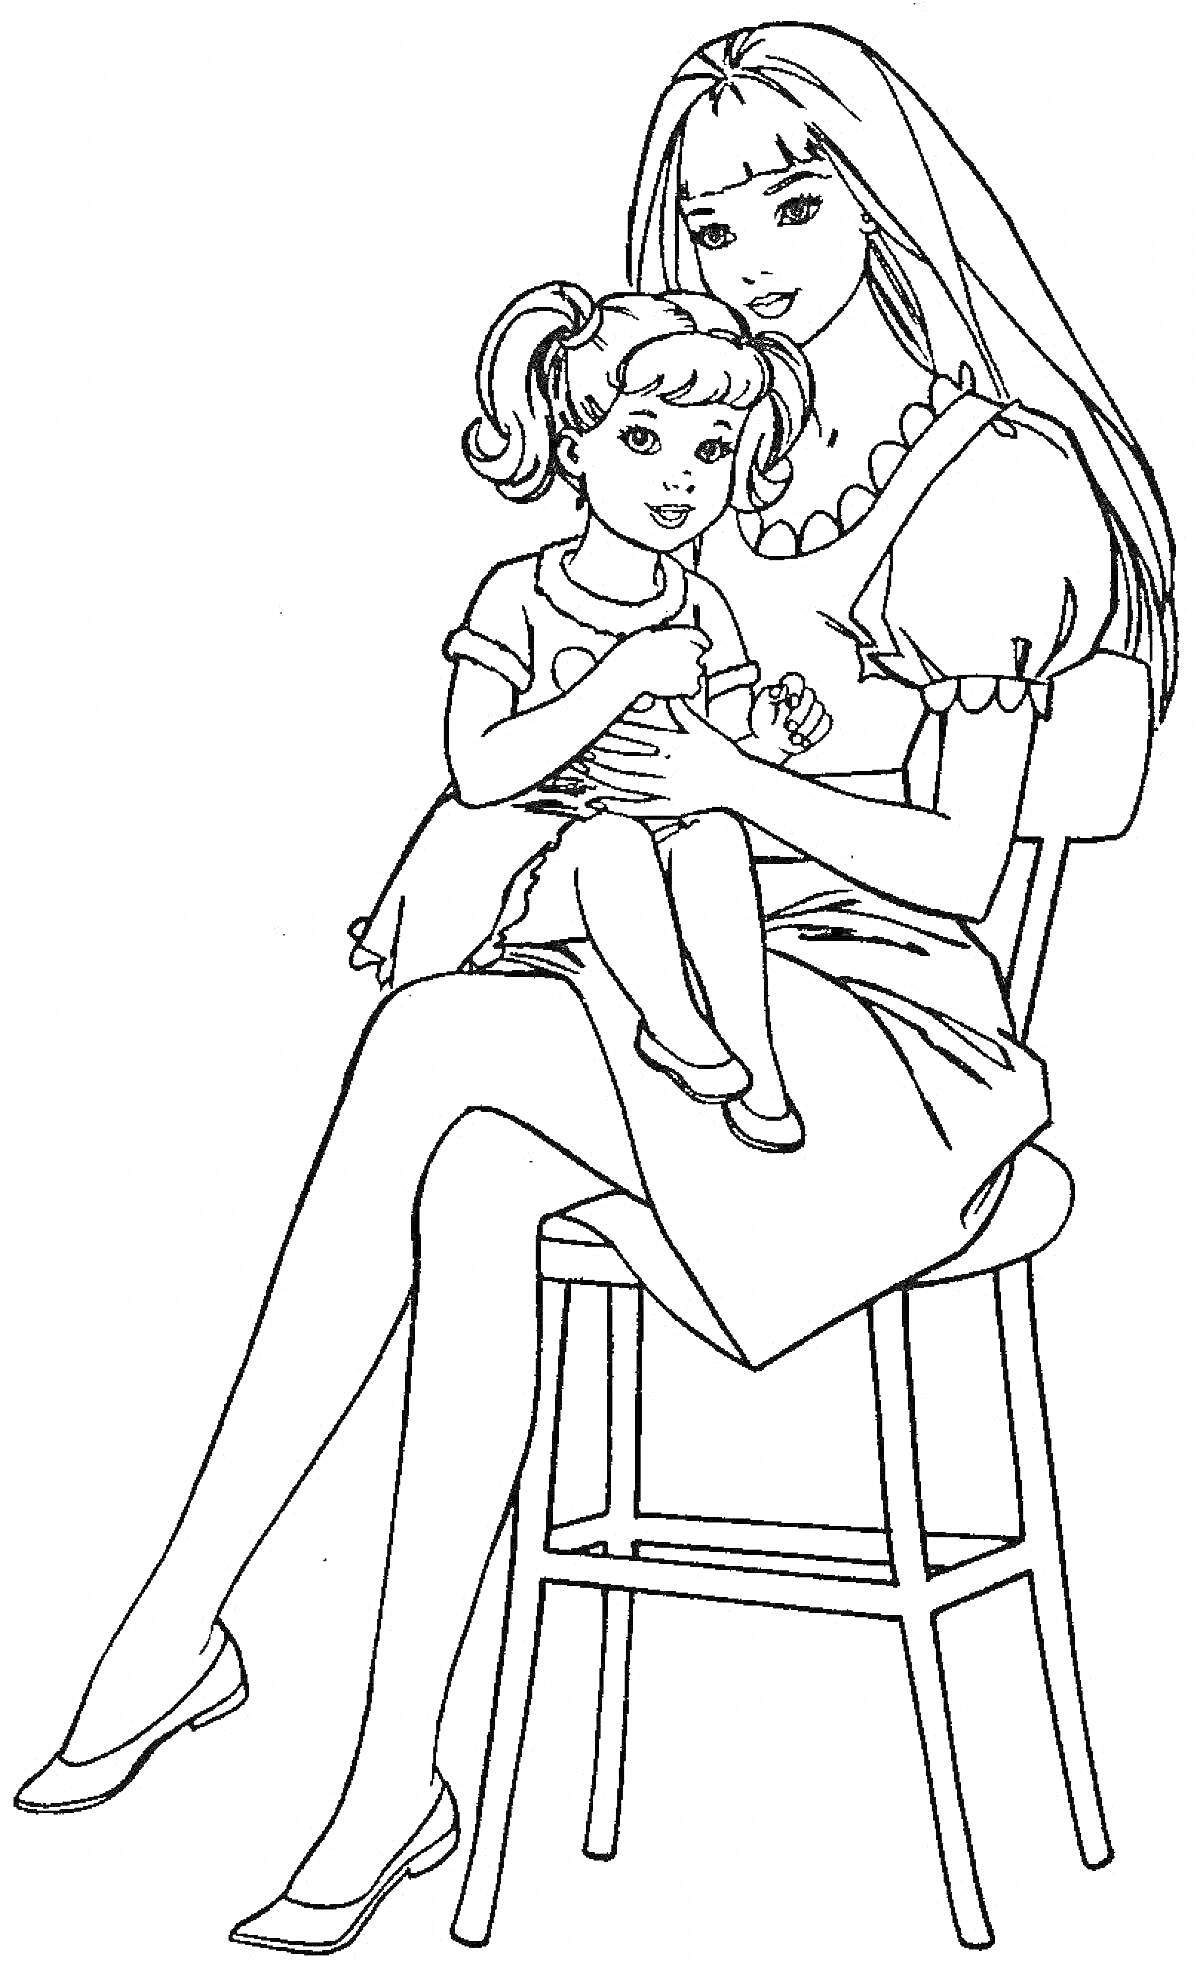 Раскраска Мама с длинными волосами и ожерельем держит на коленях дочку с хвостиками, оба сидят на кухонном стуле